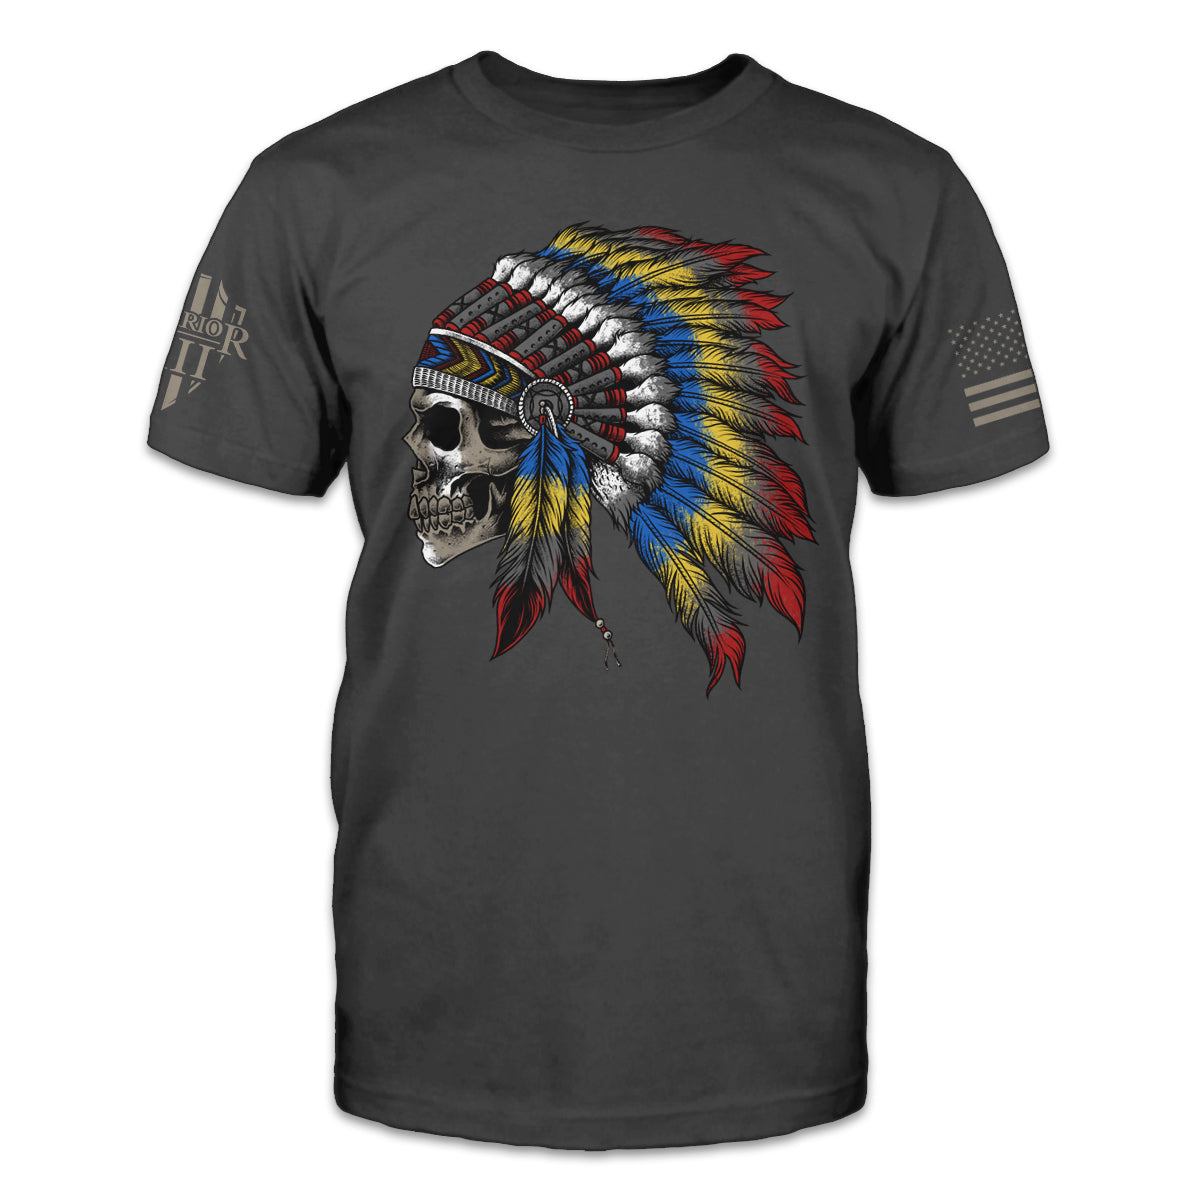 An asphalt grey t-shirt featuring a profile view Native American skull wearing a war bonnet.